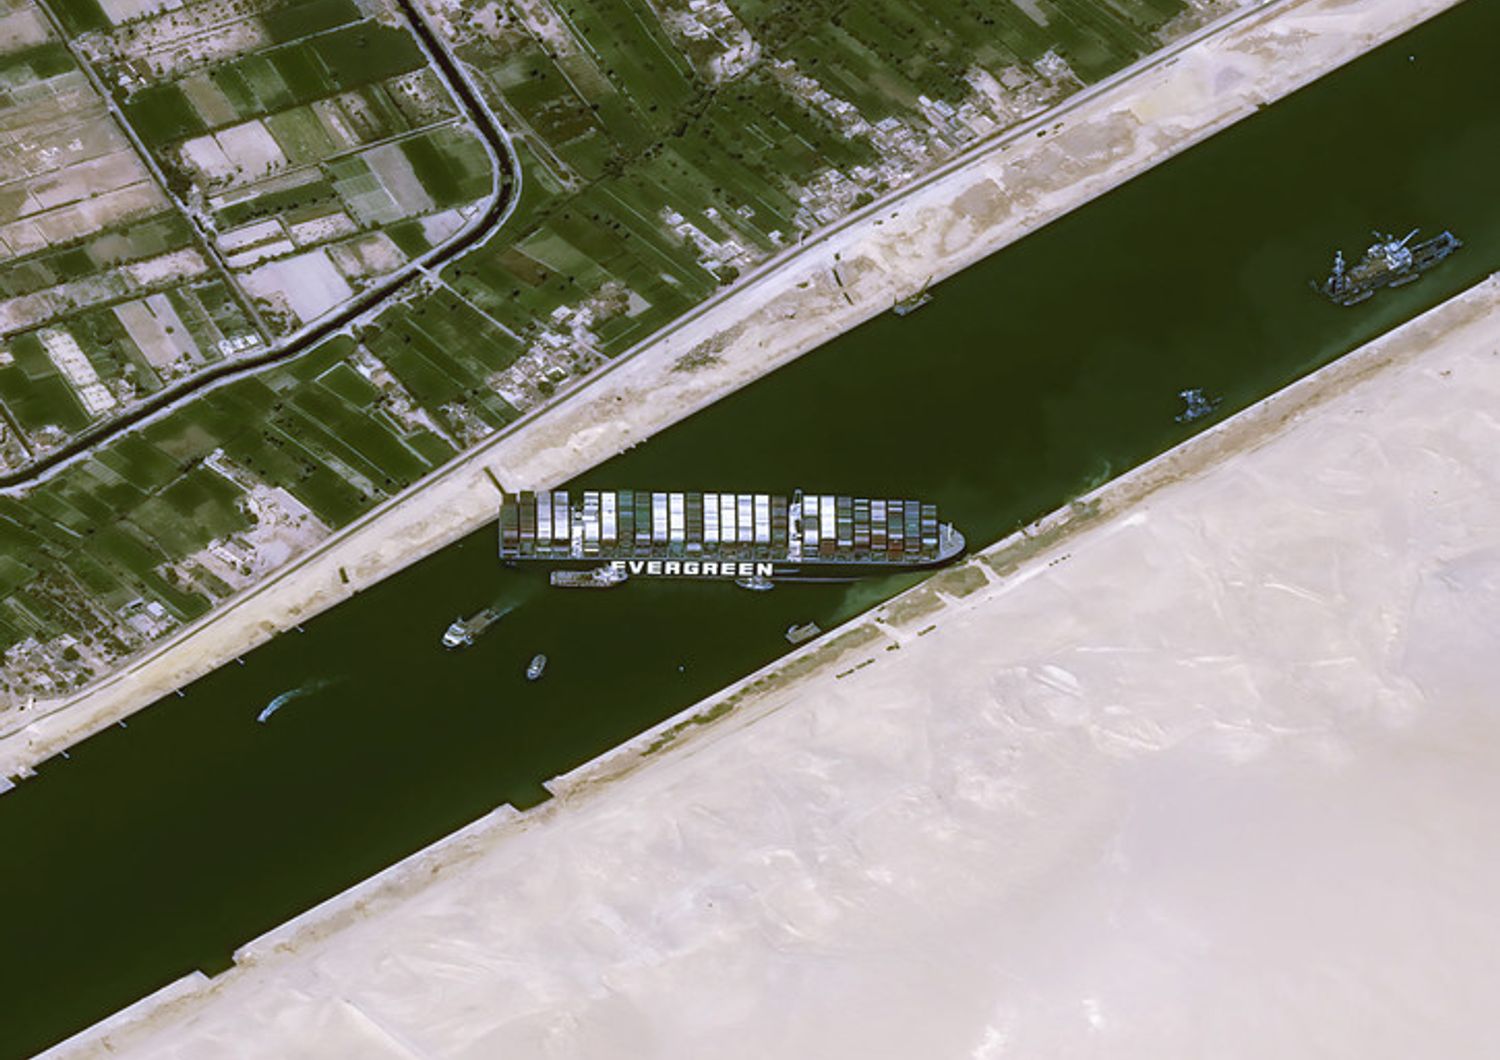 Ever Green, nave battente bandiera panamense incagliata nel Canale di Suez